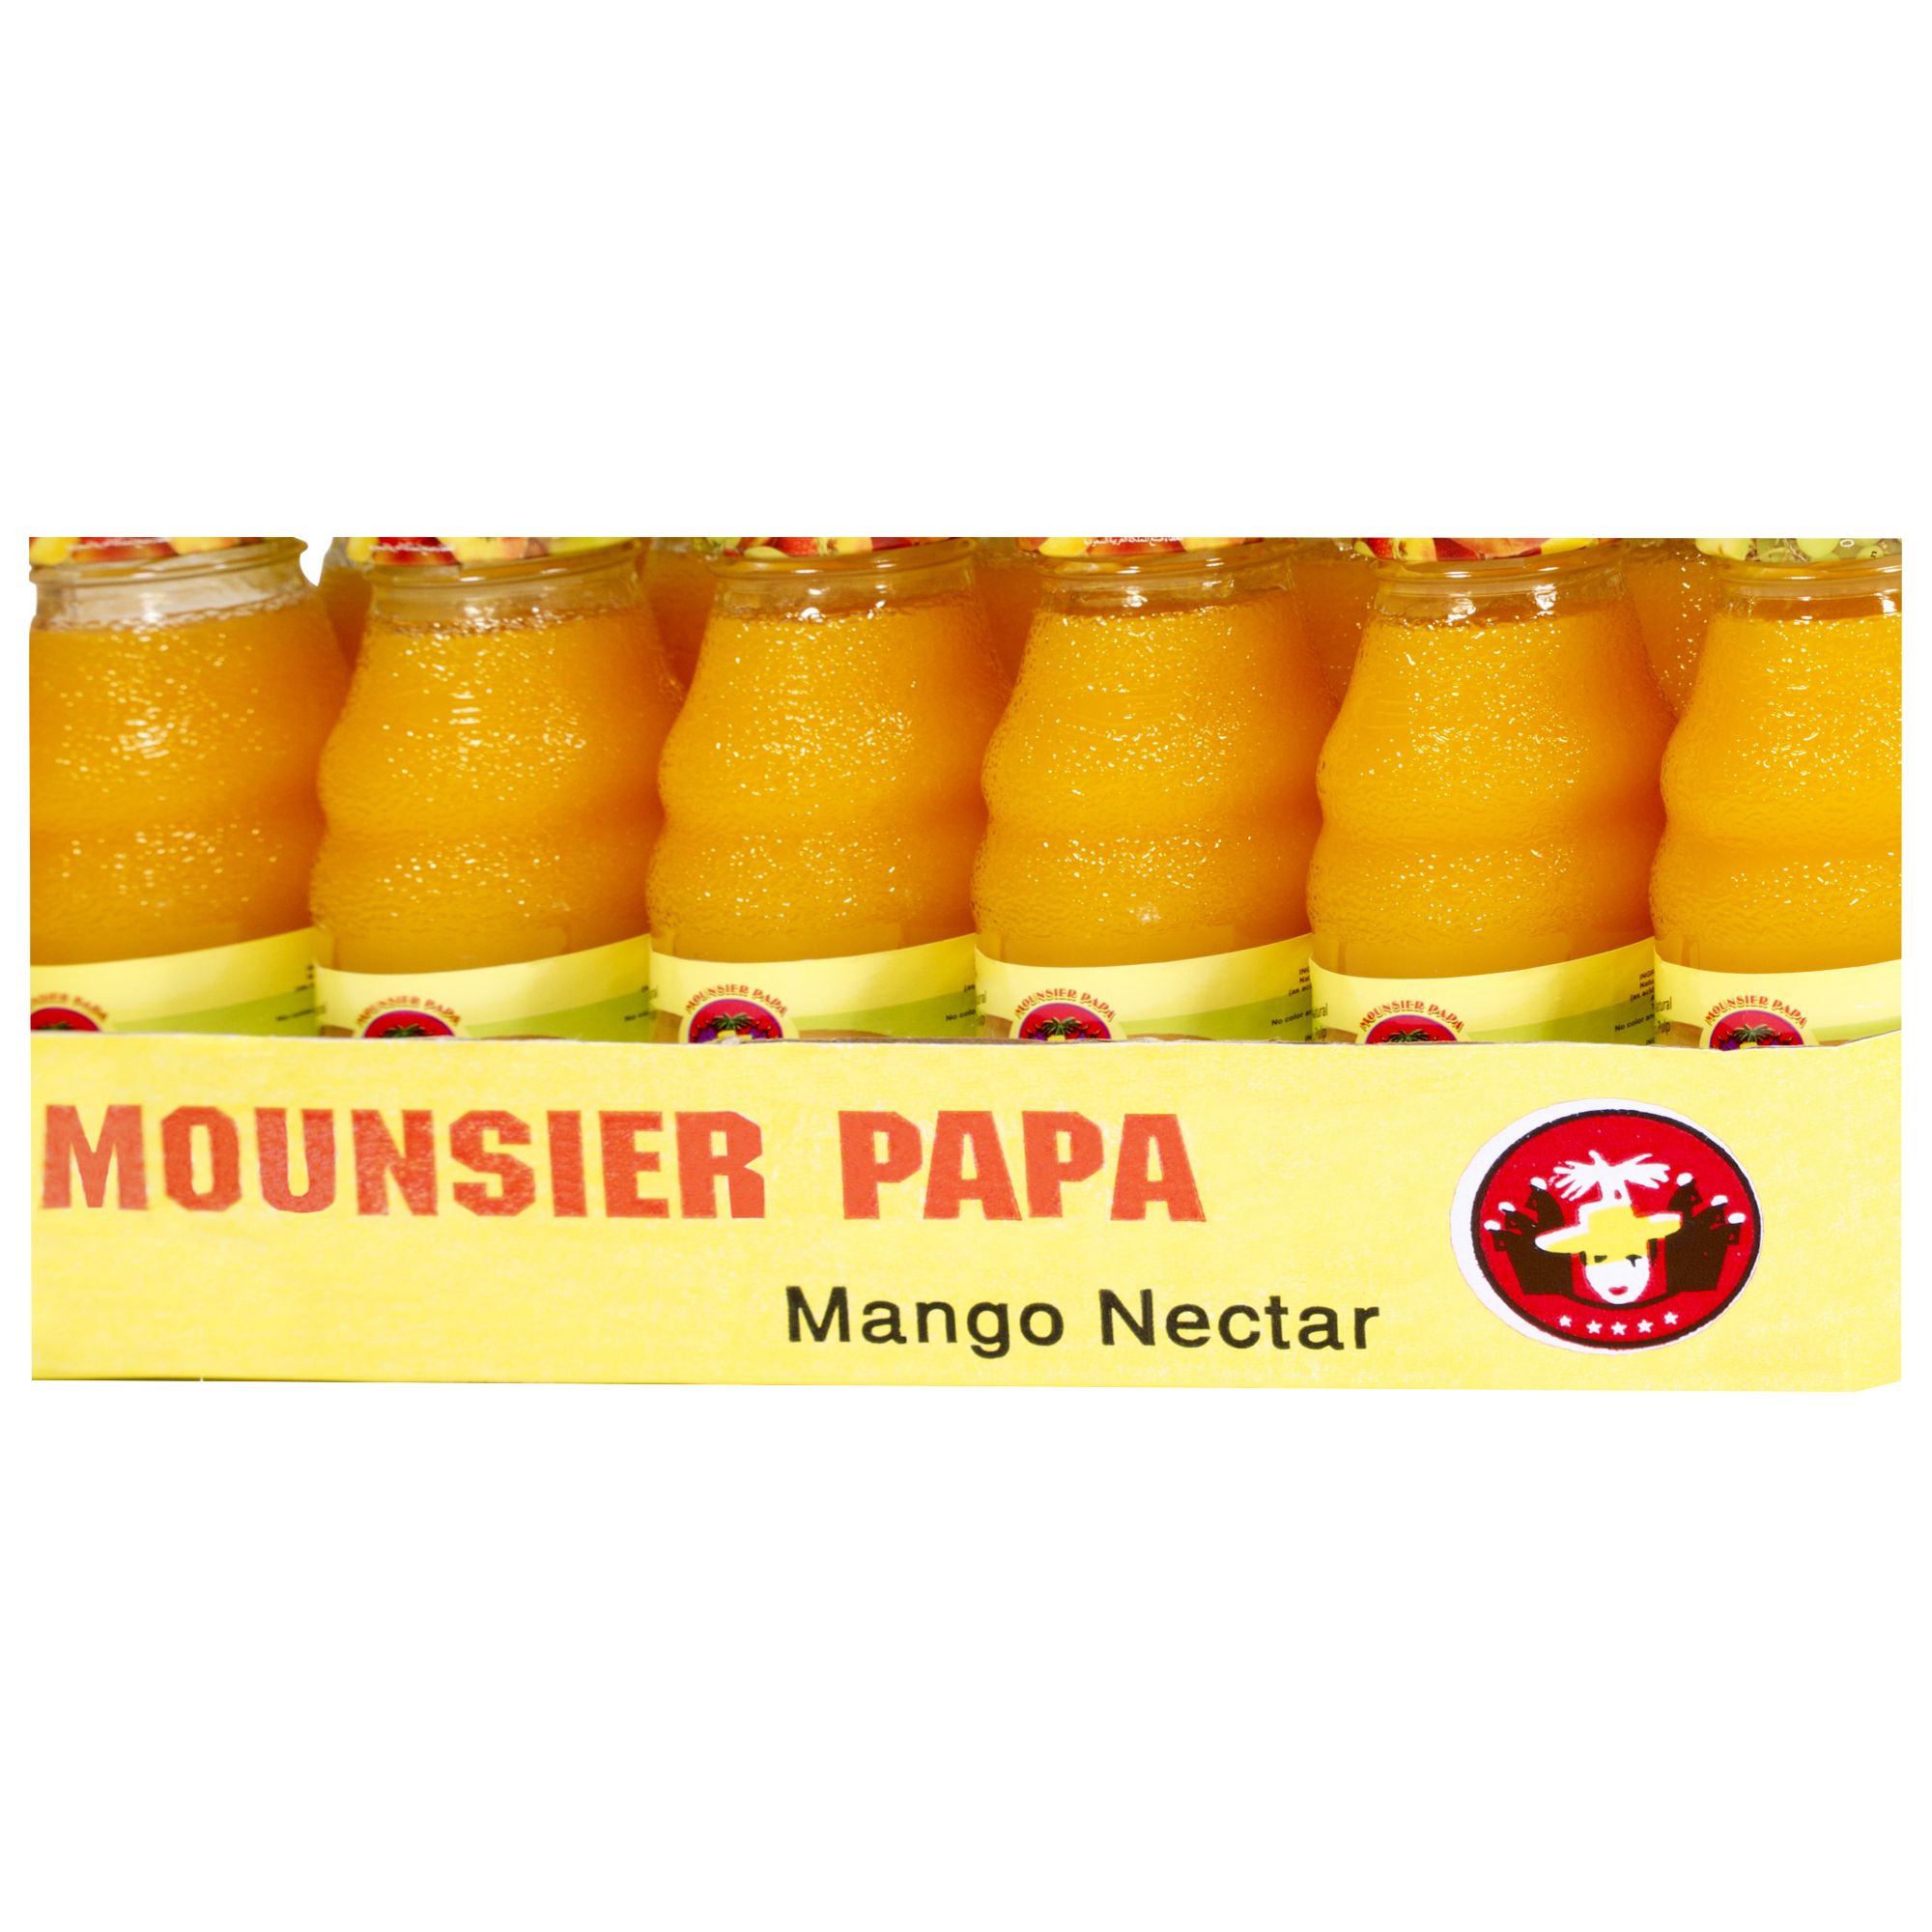 Mounsier Papa Mango Nectar, 24 pk./8.45 oz.